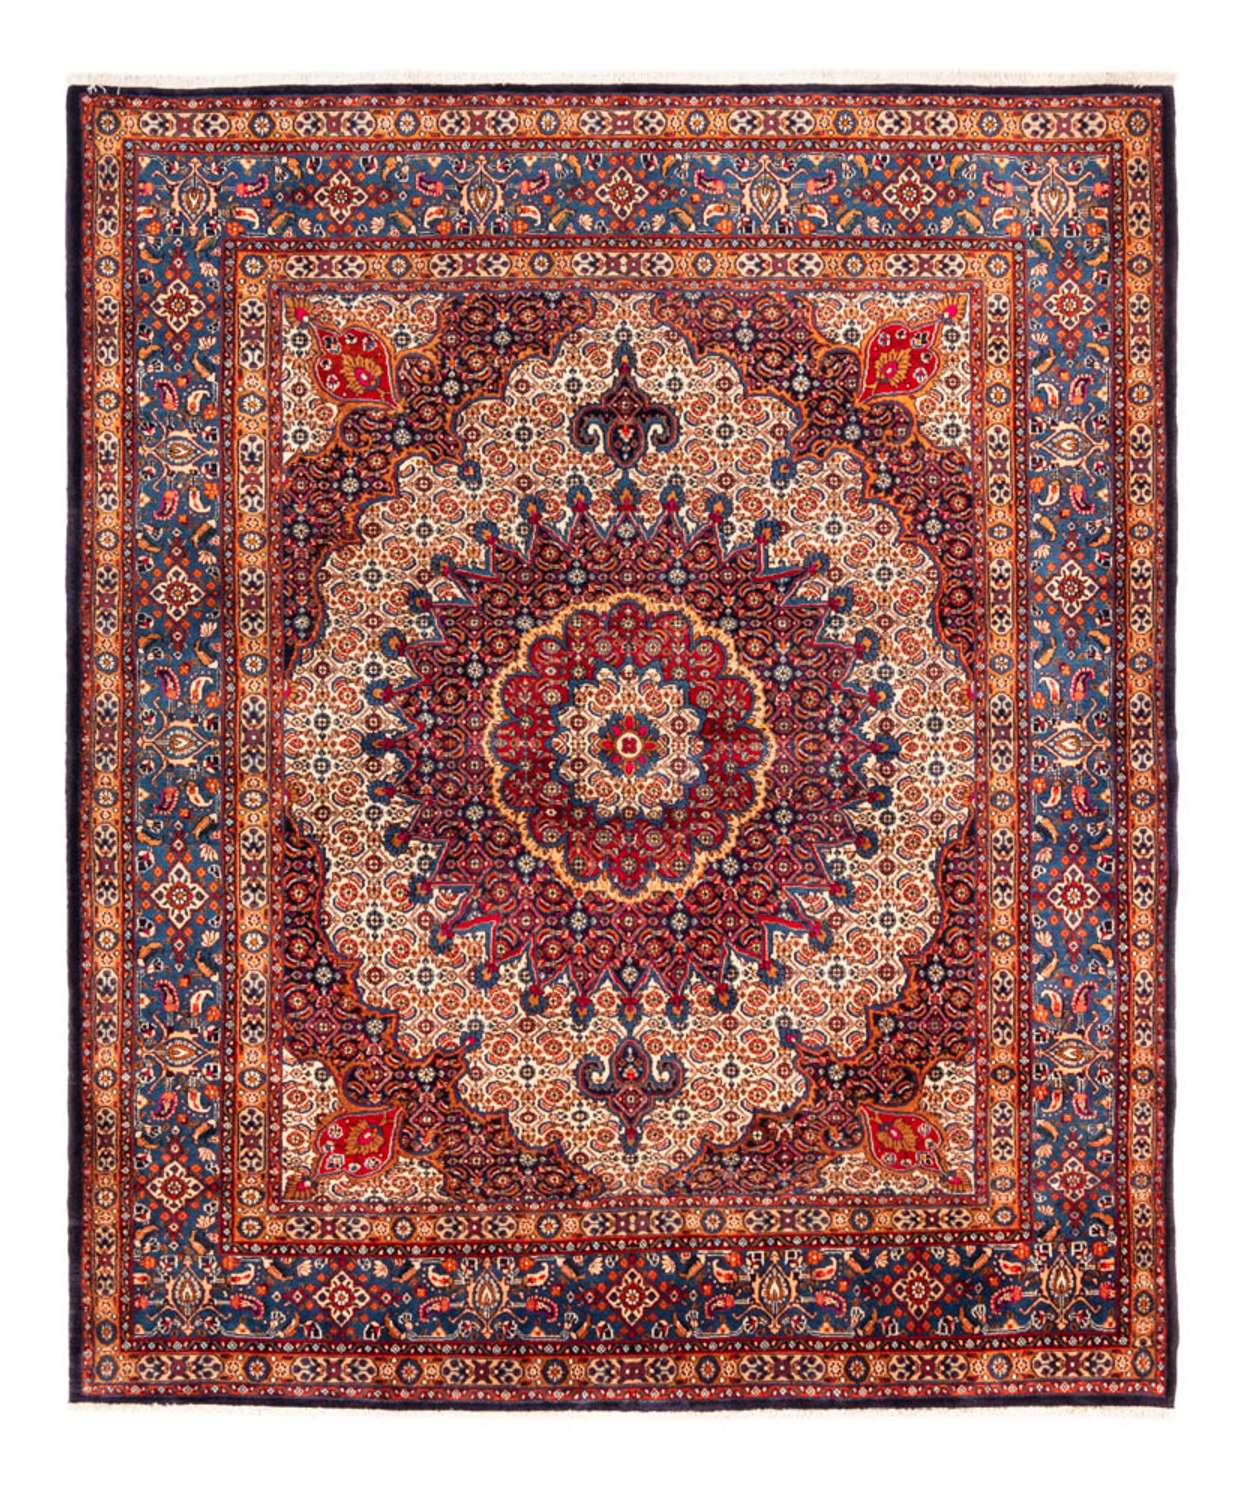 Persisk matta - Classic - 262 x 217 cm - röd